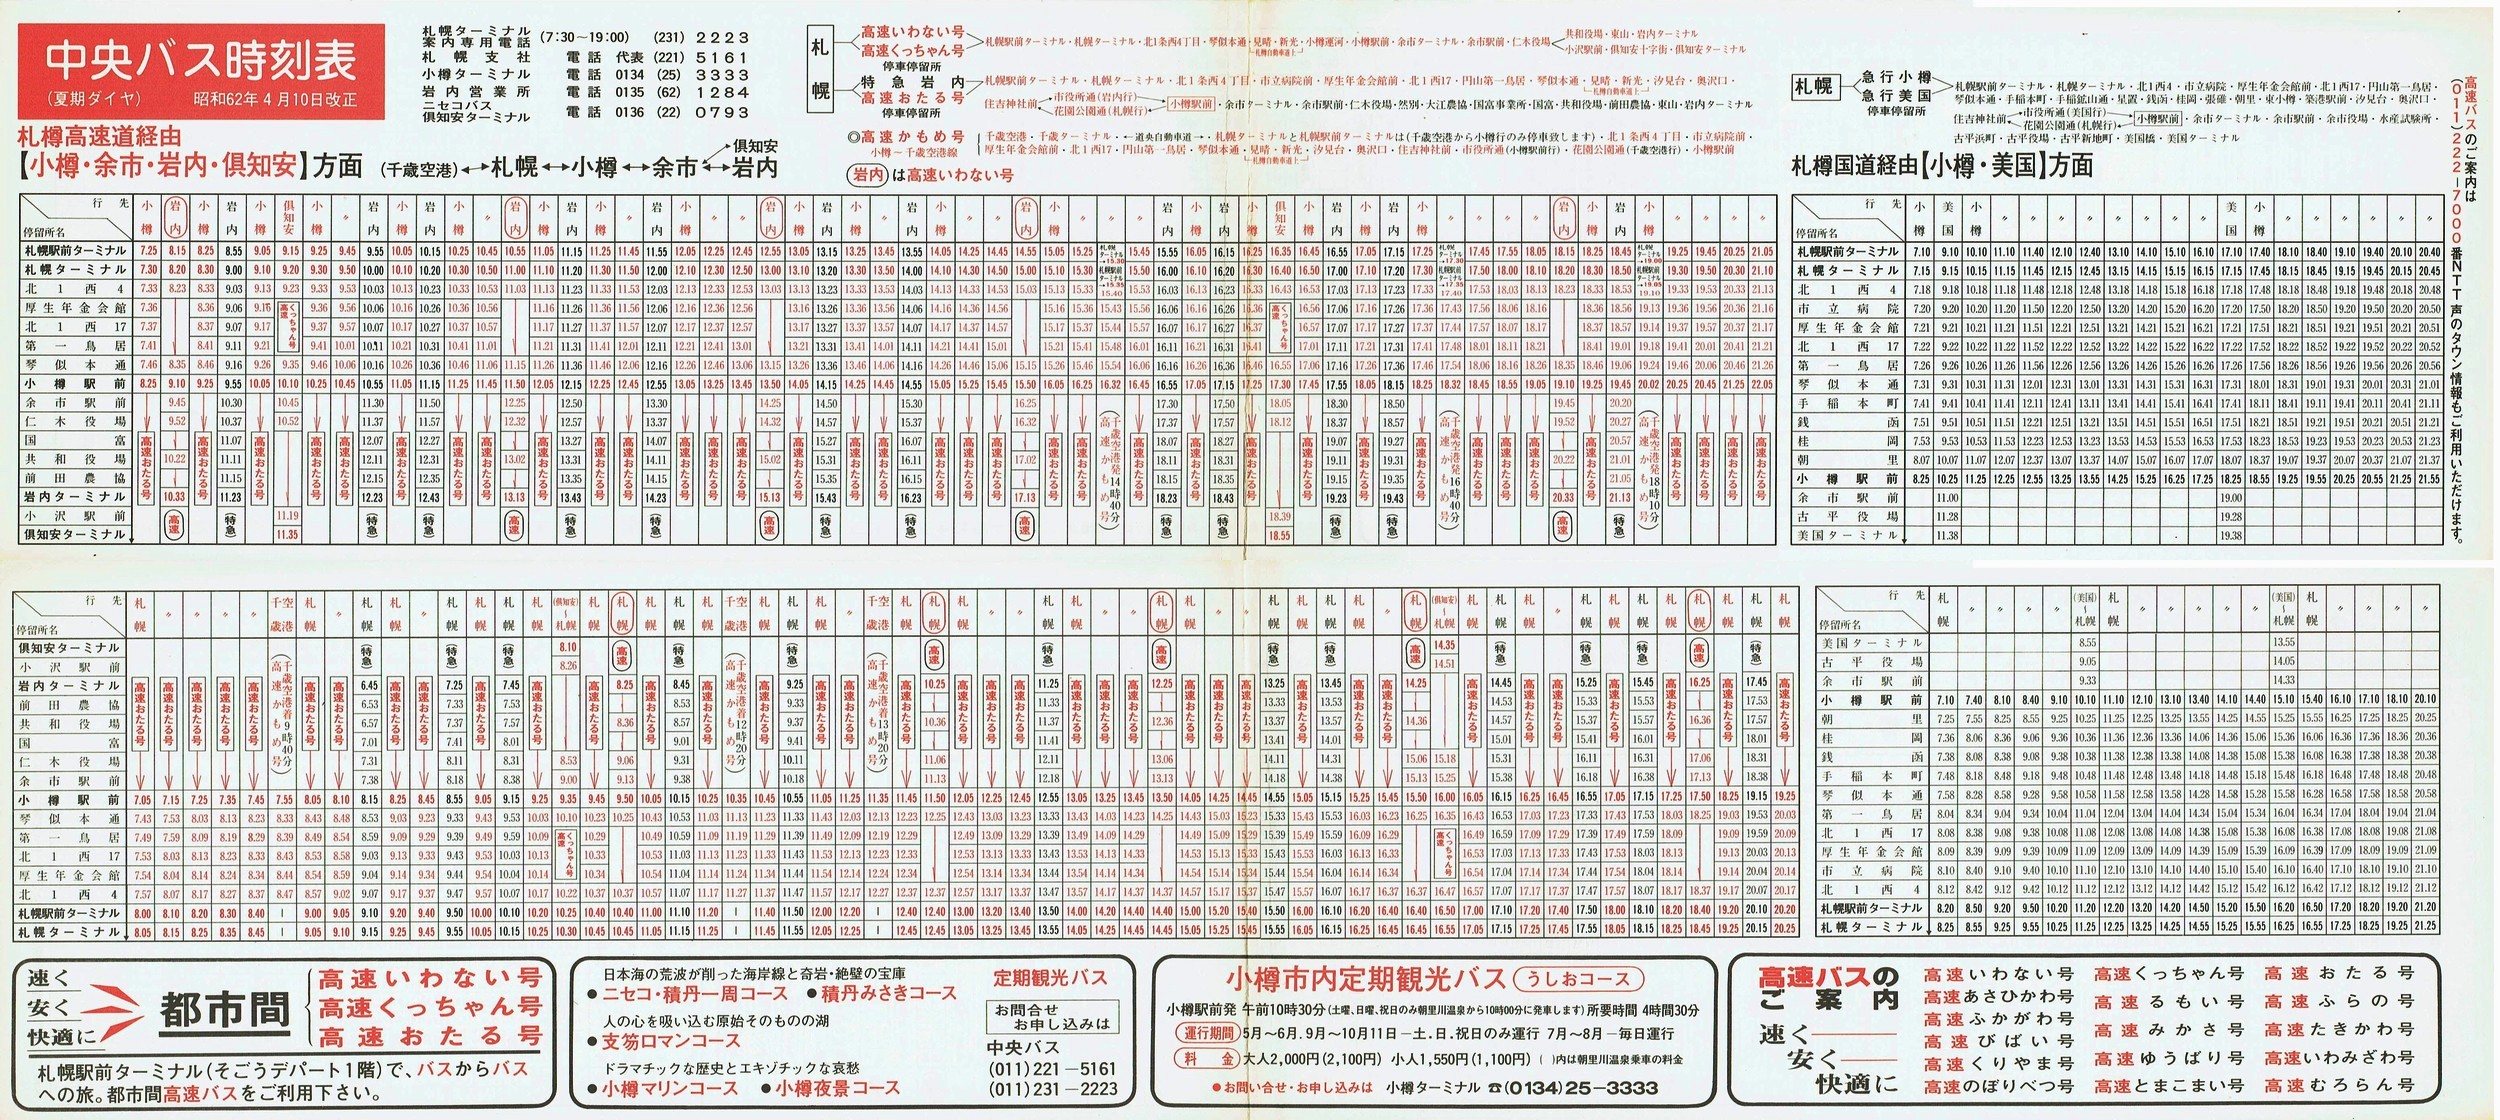 1987-04-10改正_北海道中央バス(札幌)_小樽・美国・岩内・倶知安方面時刻表